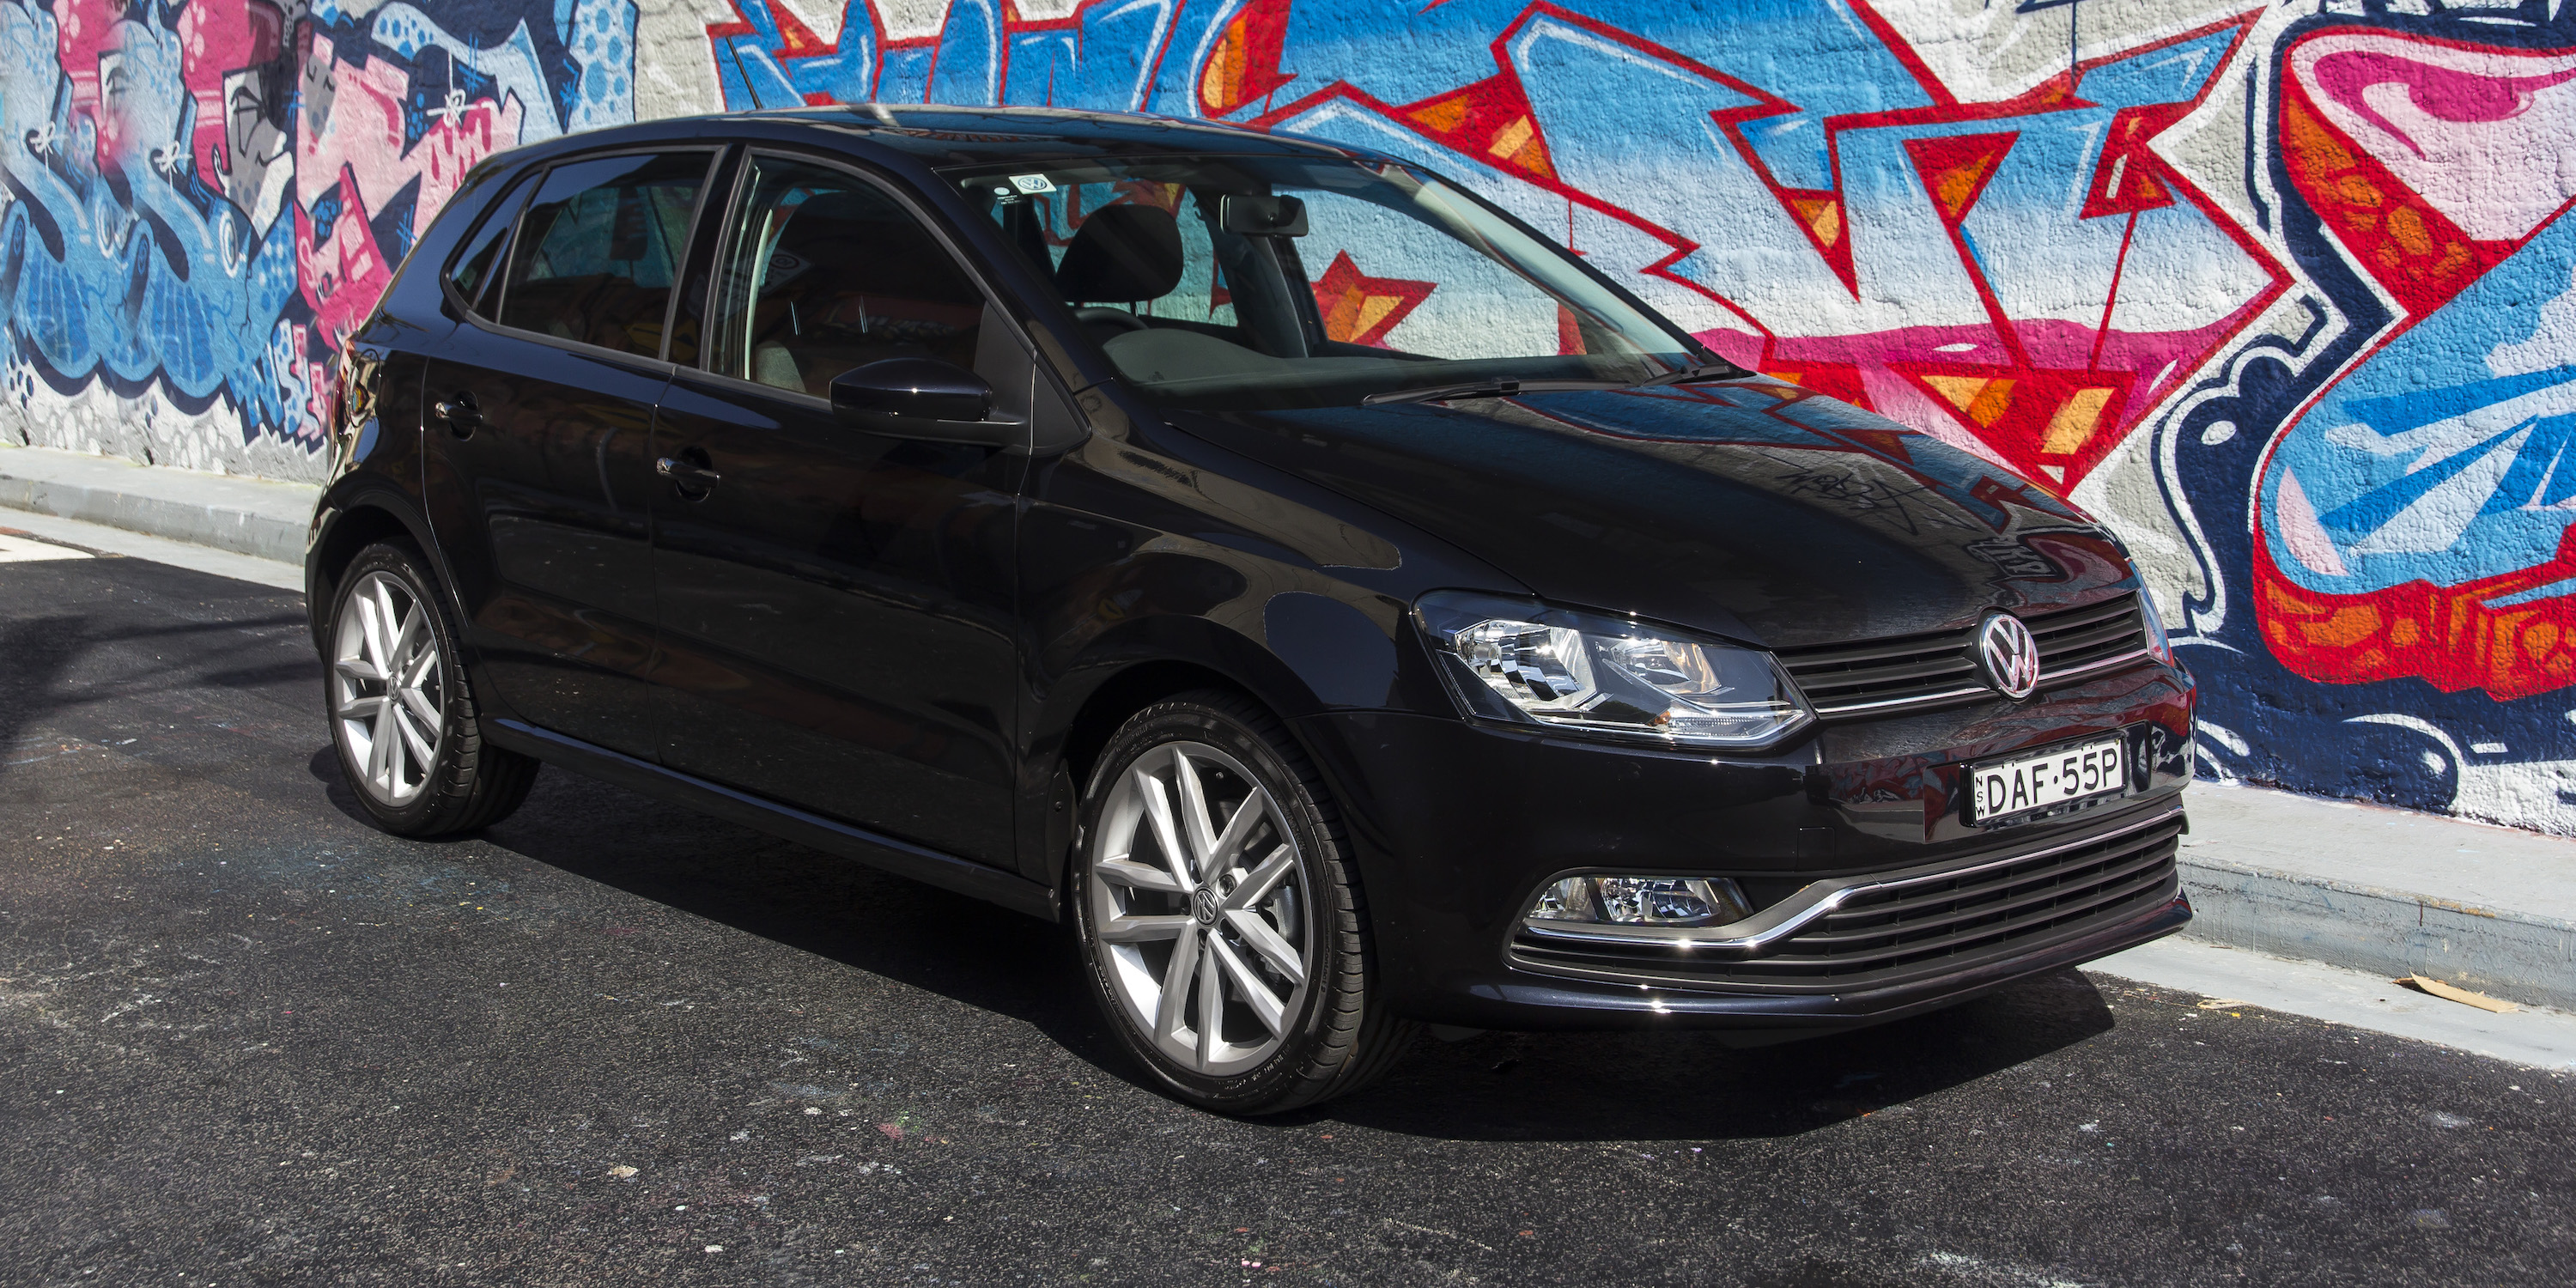 2016 Volkswagen Polo Review photos CarAdvice